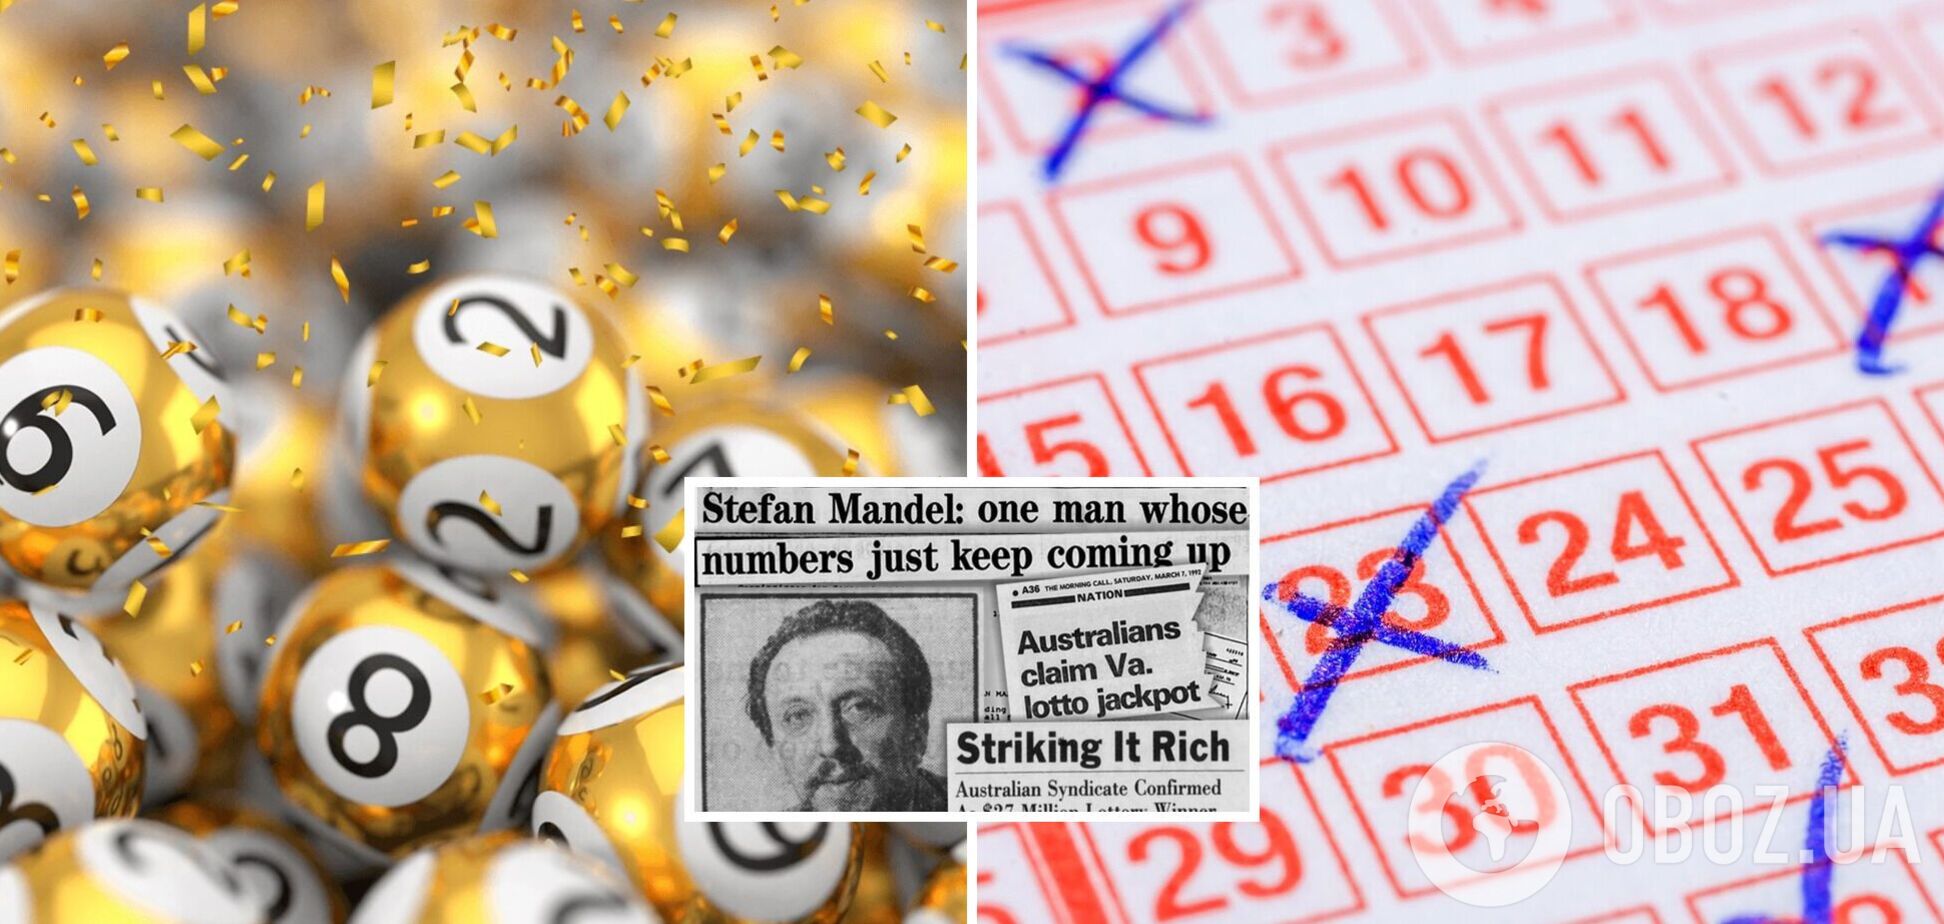 Изобретательный мужчина обманул лотерею и выиграл 14 раз: в чем его хитрость